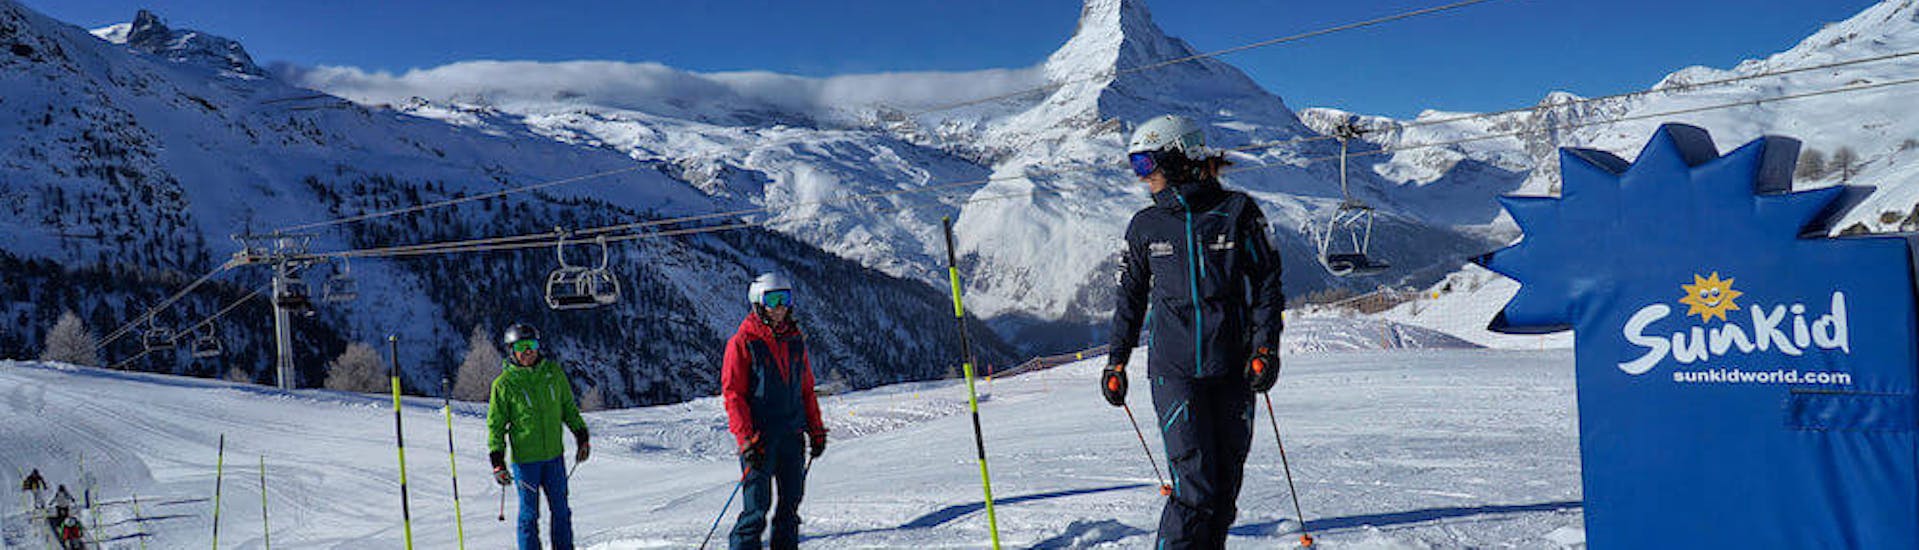 Skileraar en leerlingen gaan het tovertapijt op tijdens de privé-skilessen voor beginners - 3 dagen met Stocked Snowsports School Zermatt